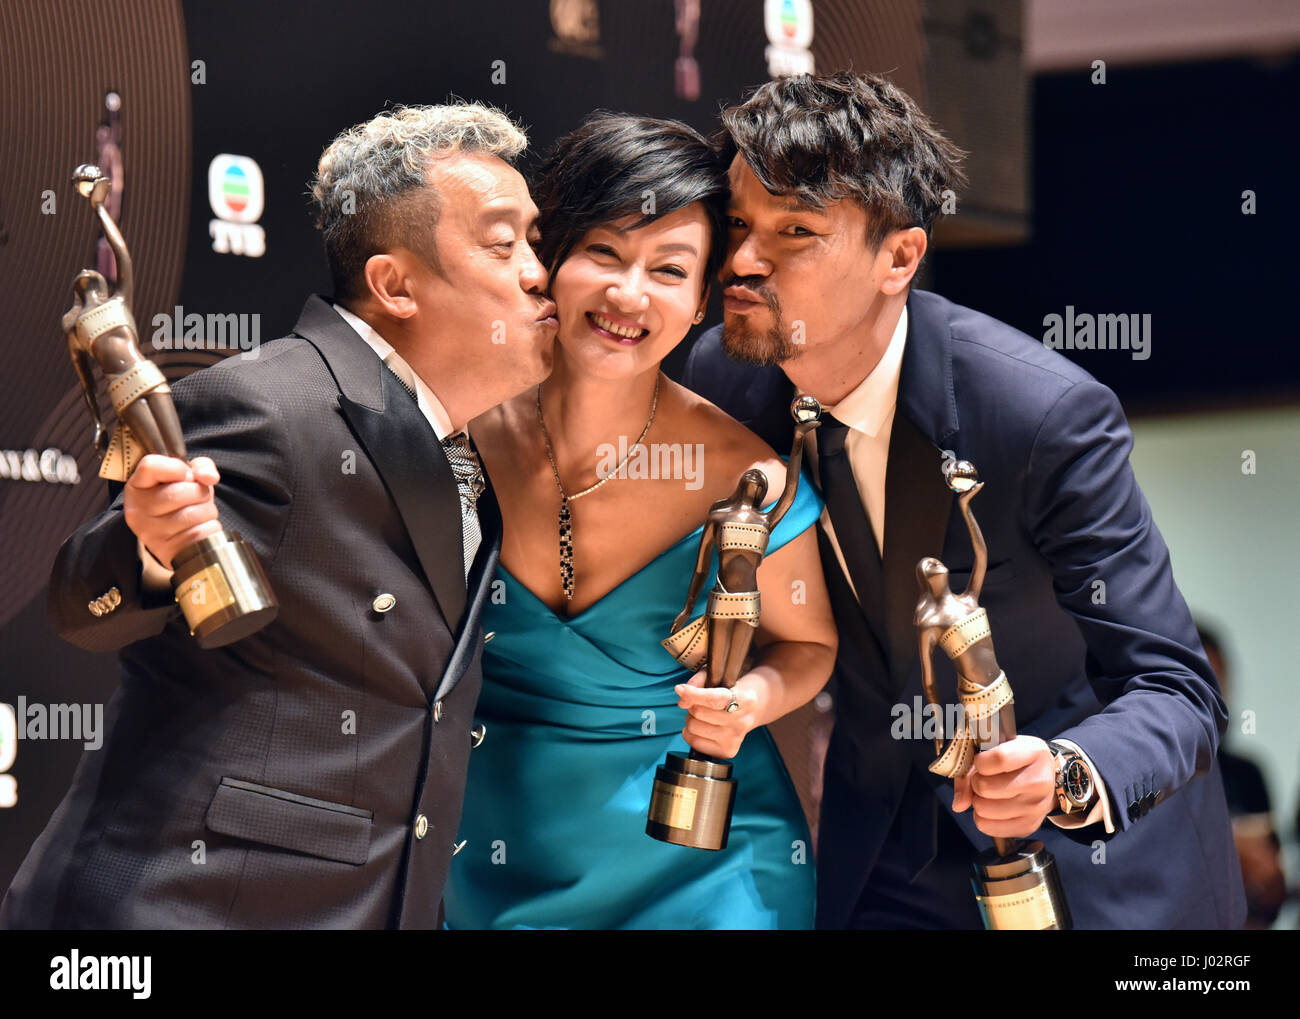 Hong Kong, China. 9th Apr, 2017. Actors Lam Ka Tung (1st R), Kara Wai (C) and Eric Tsang pose when meeting the press after the 36th Hong Kong Film Awards presentation ceremony in Hong Kong, south China, April 9, 2017. Lam Ka Tung won the Best Actor for film 'Trivisa', Kara Wai won the Best Actress for film 'Happiness', and Eric Tsang won the Best Supporting Actor for film 'Mad World'. Credit: Wang Xi/Xinhua/Alamy Live News Stock Photo